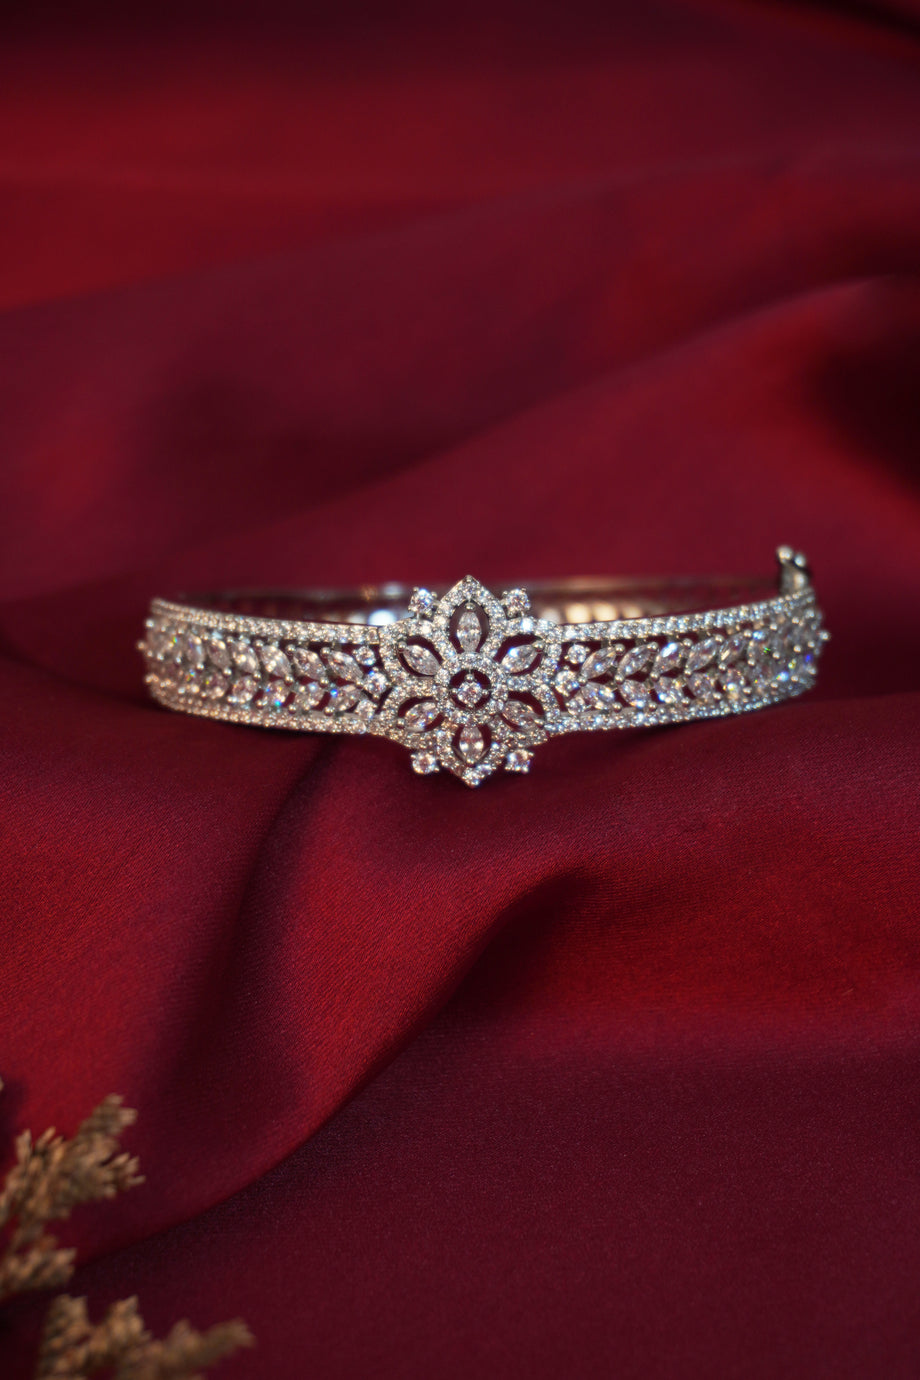 New Flower Design Oval Purple Amethyst Gemstone Charm Women Bracelet Silver  | eBay